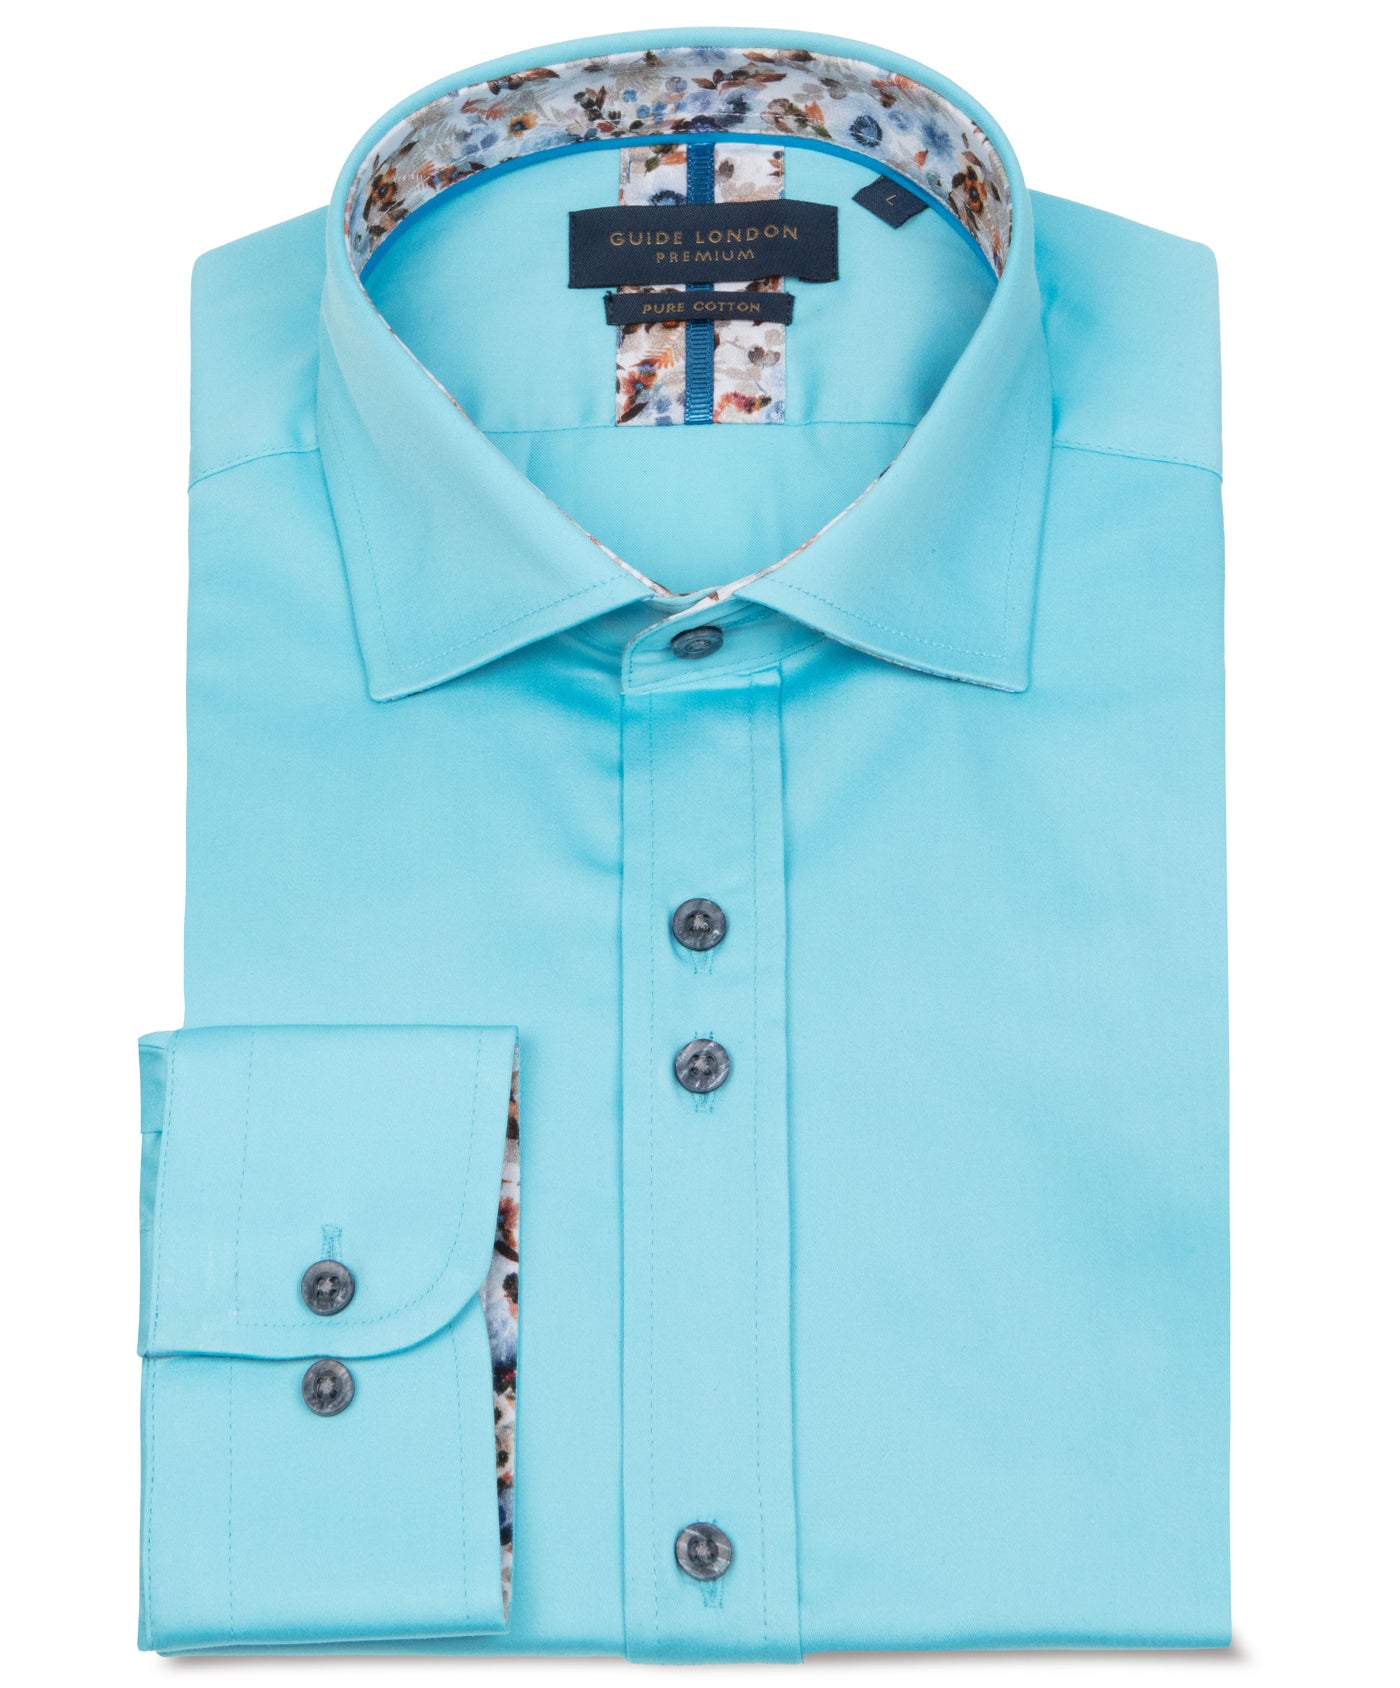 Vibrant Turquoise Floral Men's Cotton Shirt